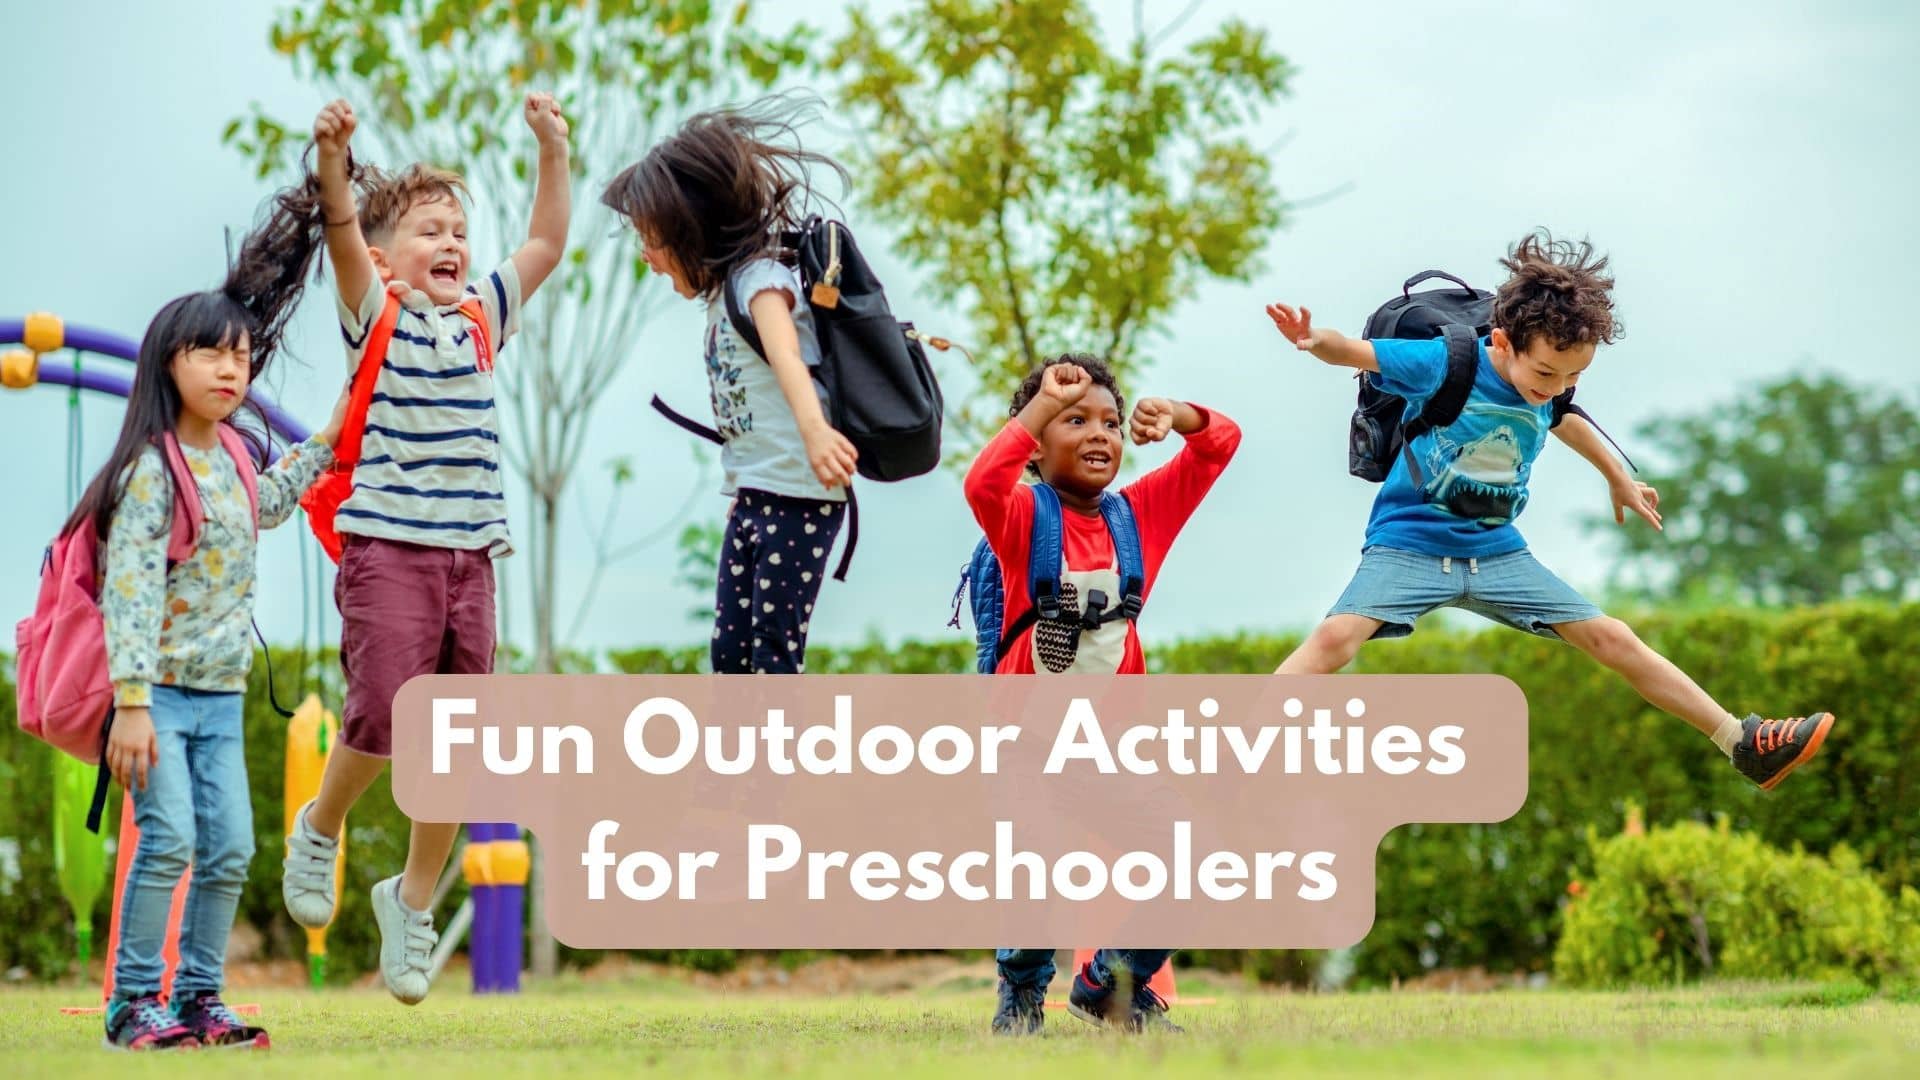 4 Fun Outdoor Activities for Preschoolers